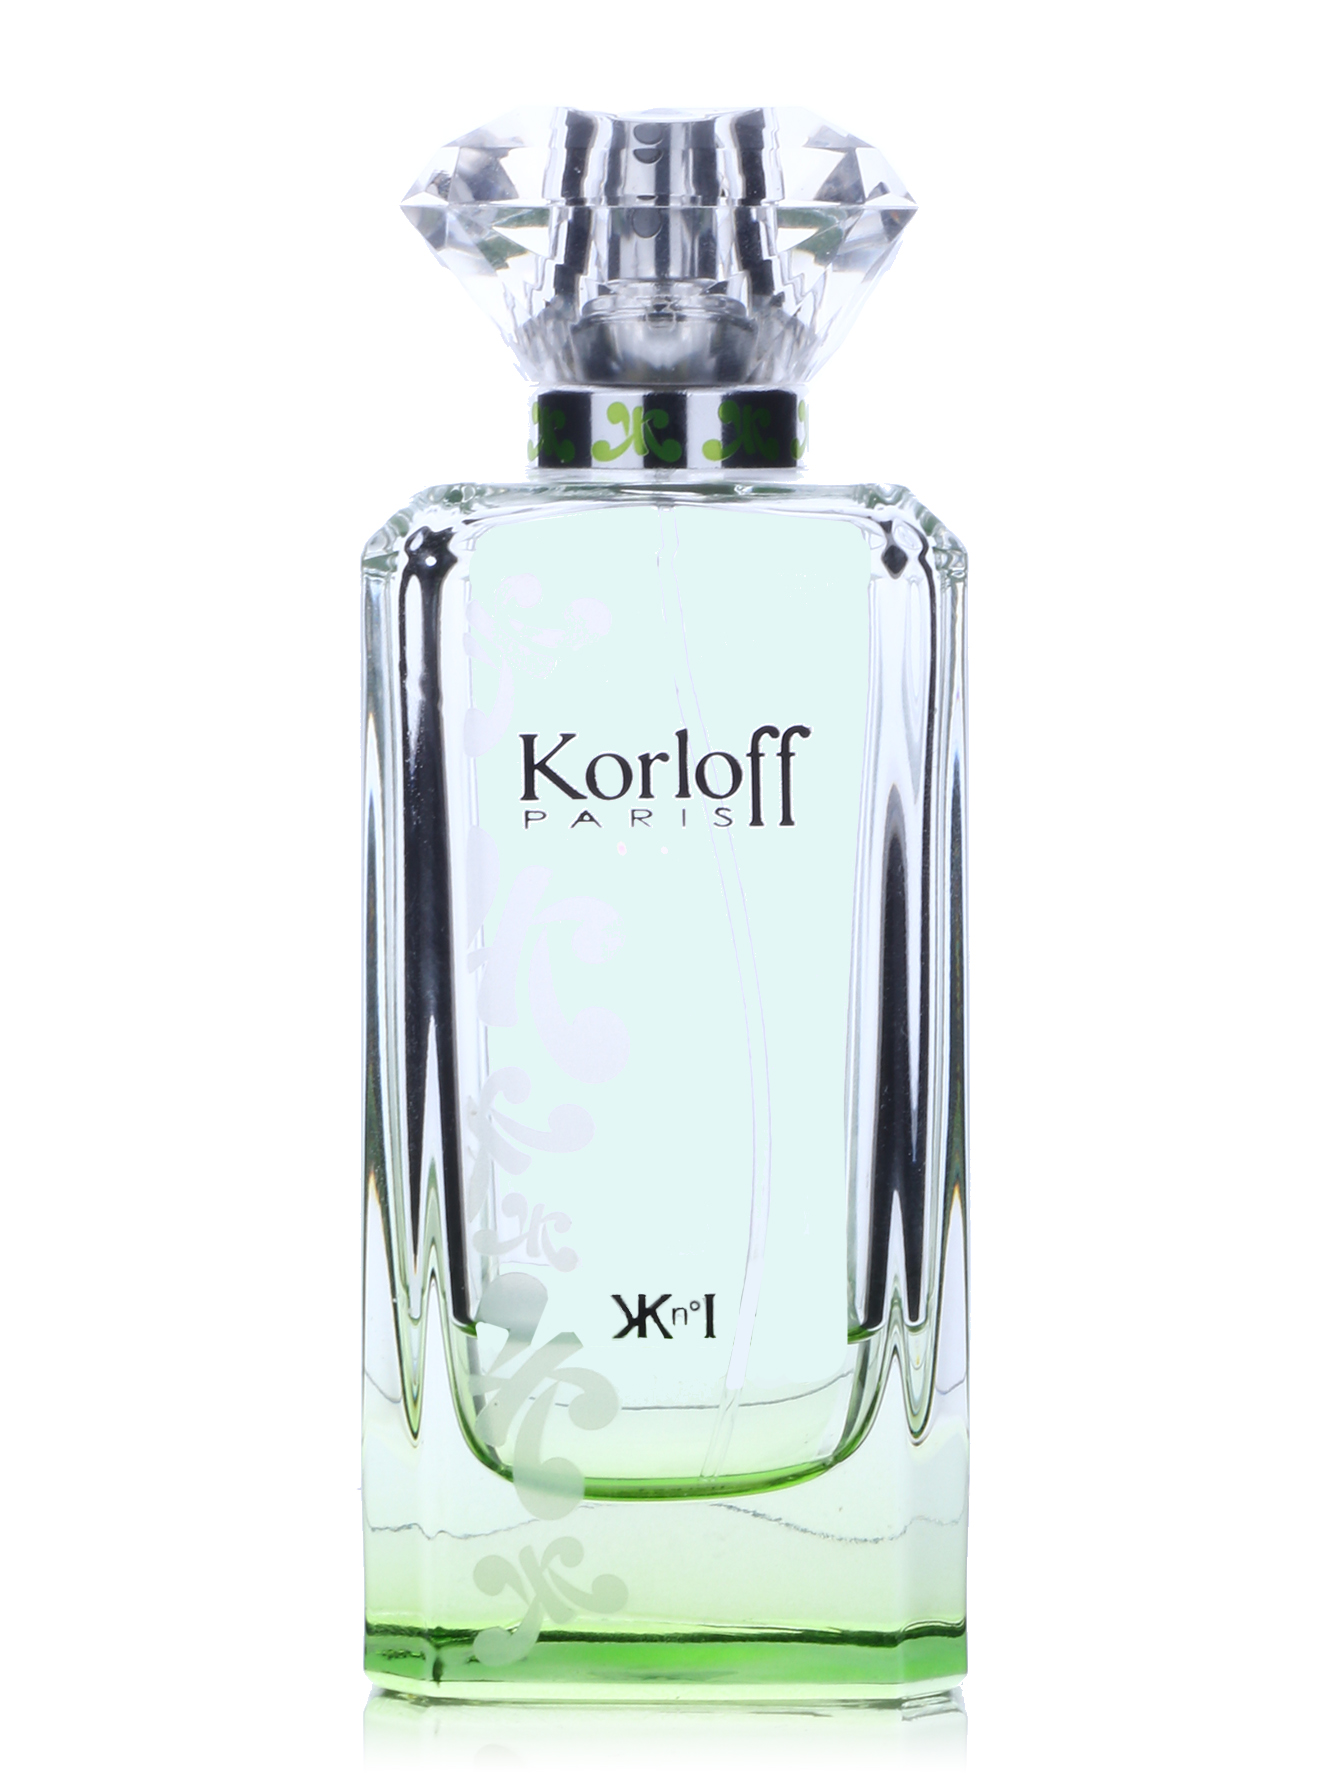 Карлов парфюм мужской. Korloff духи kn1. Карлофф духи женские зеленые. Korloff kn1 88 ml. Туалетная вода Korloff для женщин.